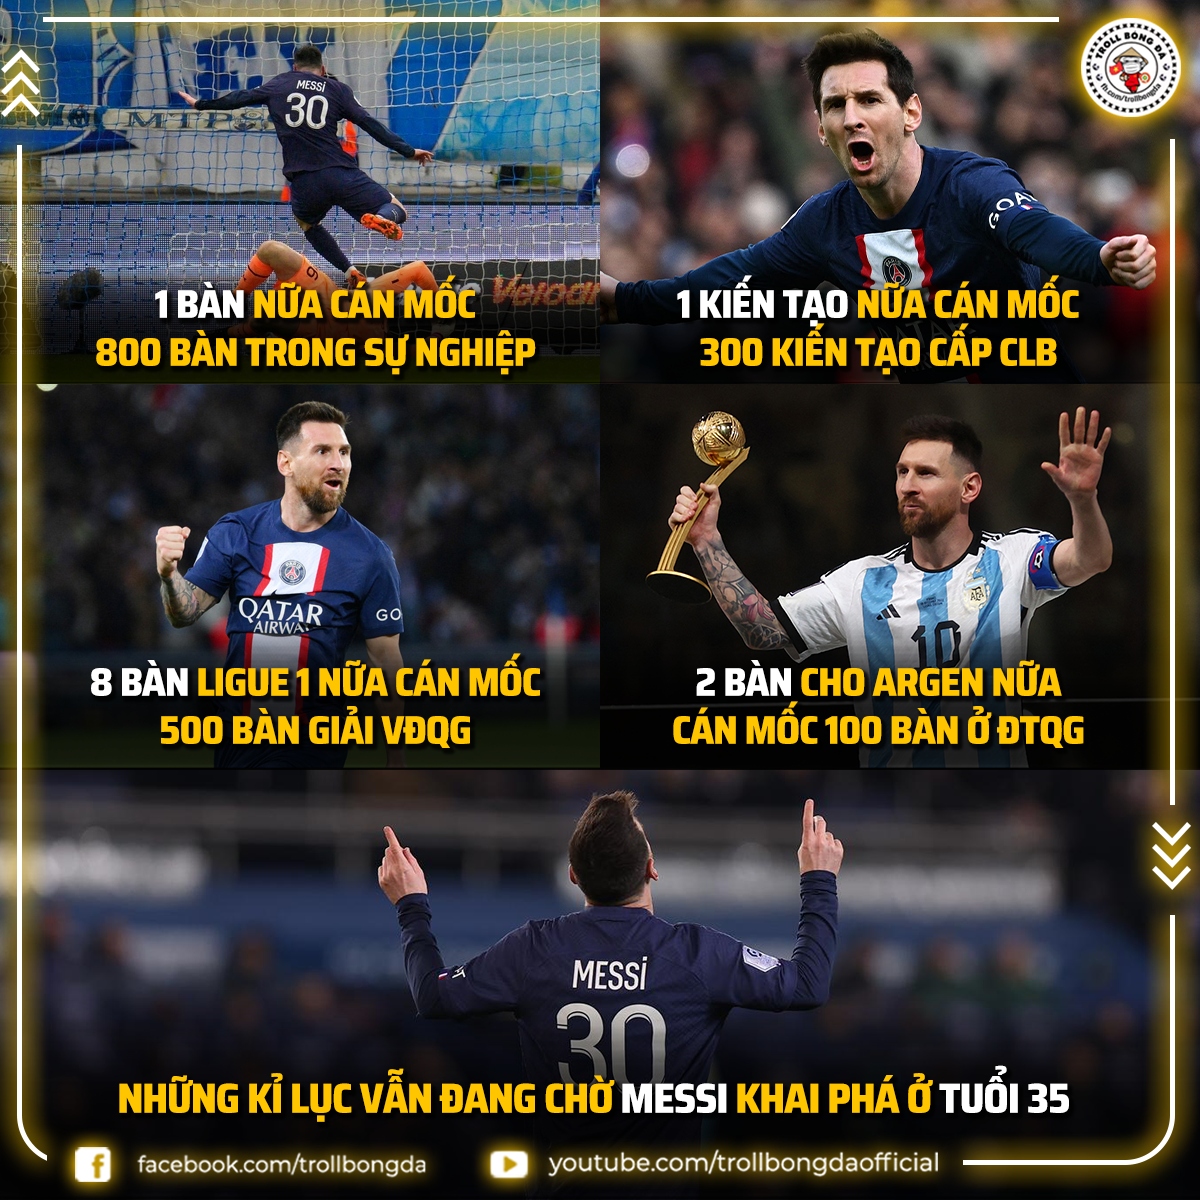 Biếm họa 24h: Messi hướng tới những kỷ lục